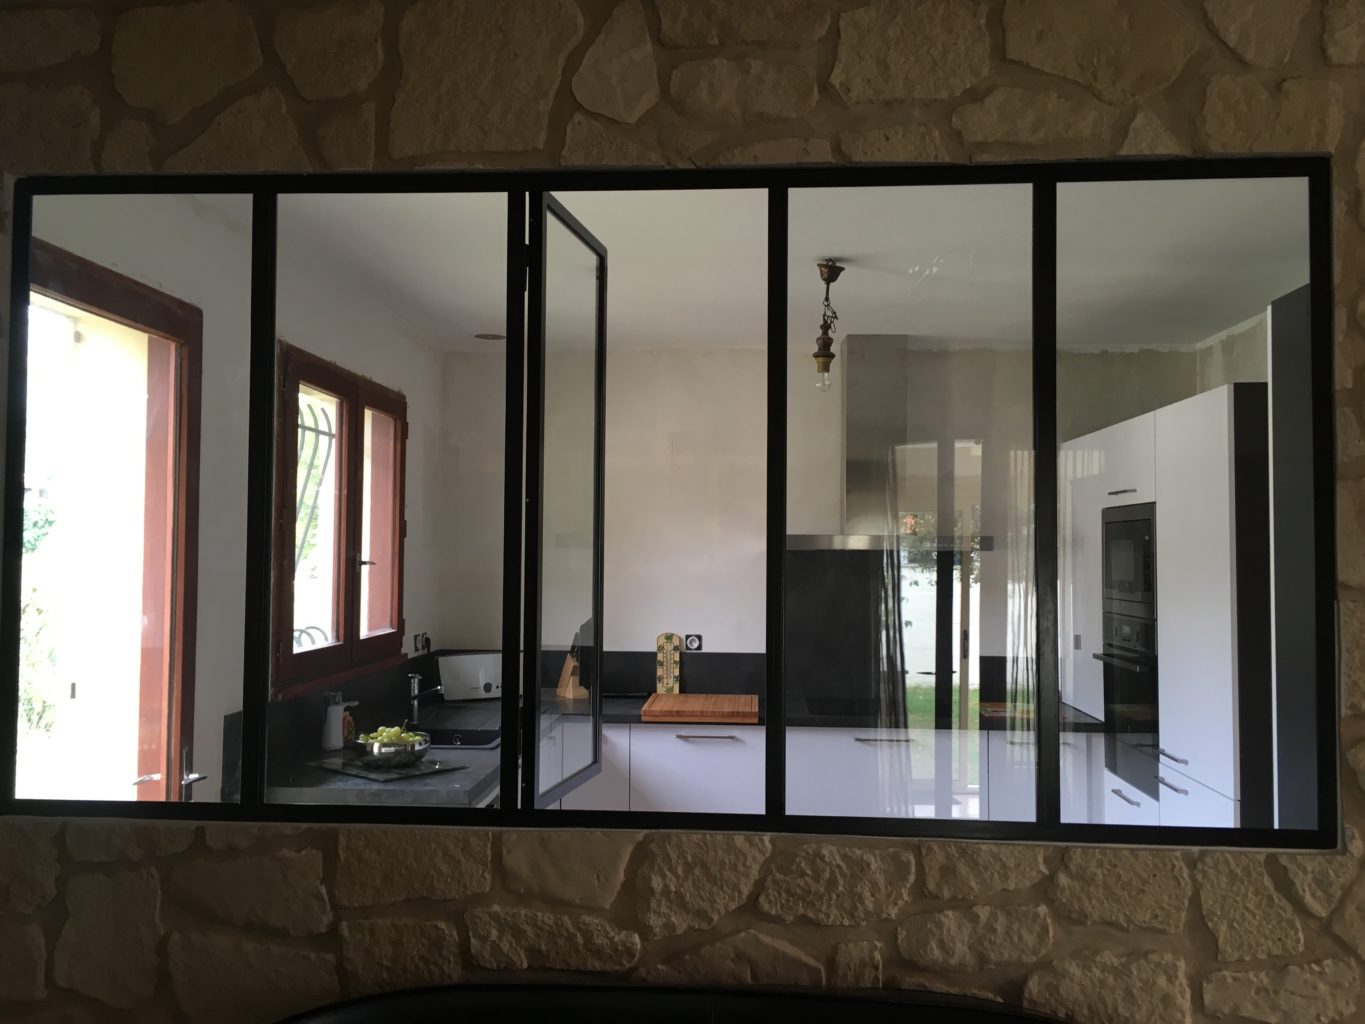 Verrière intérieur style atelier artiste avec fenêtre